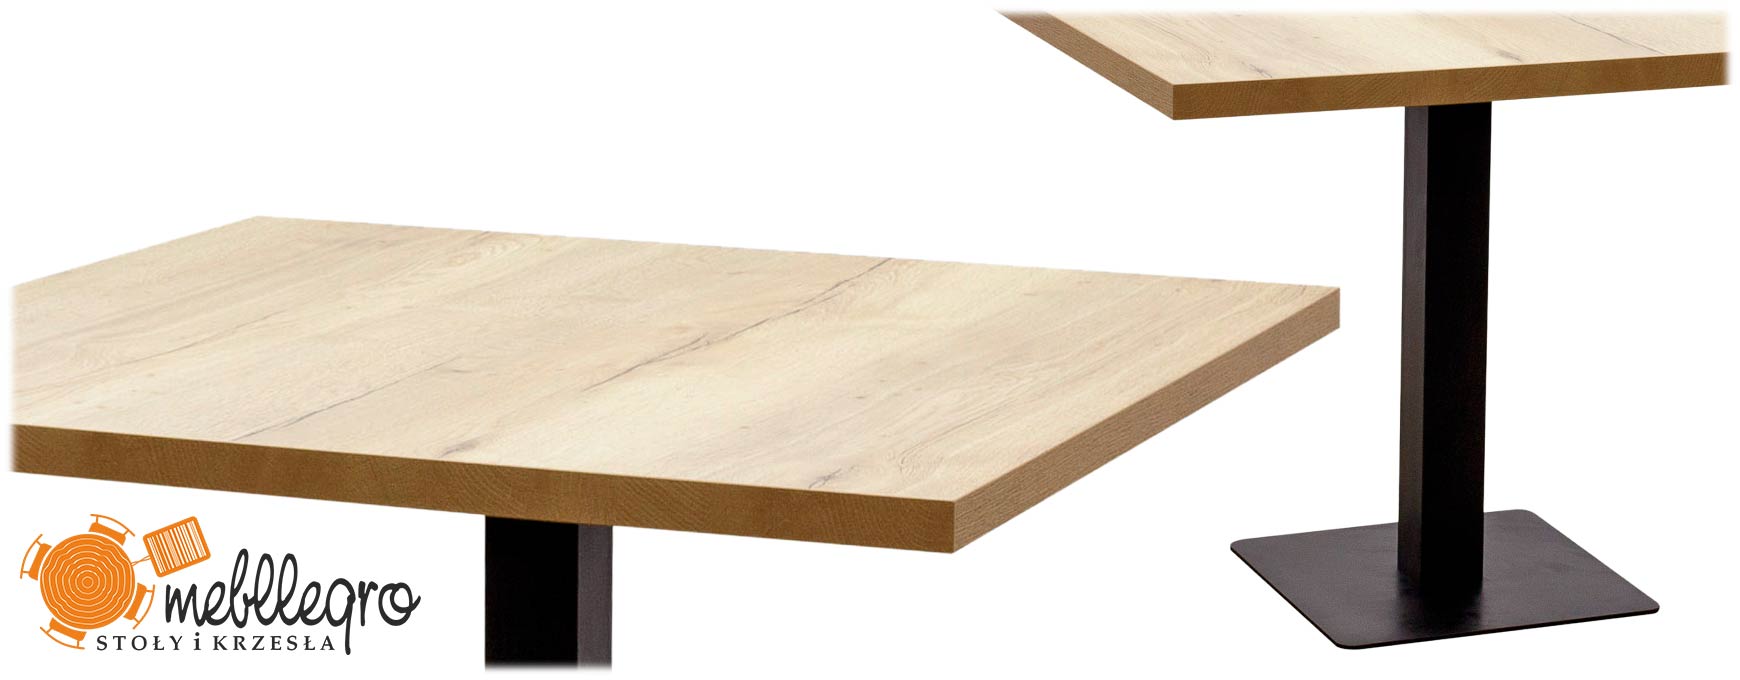 Kwadratowy stolik na jednonodze metalowej